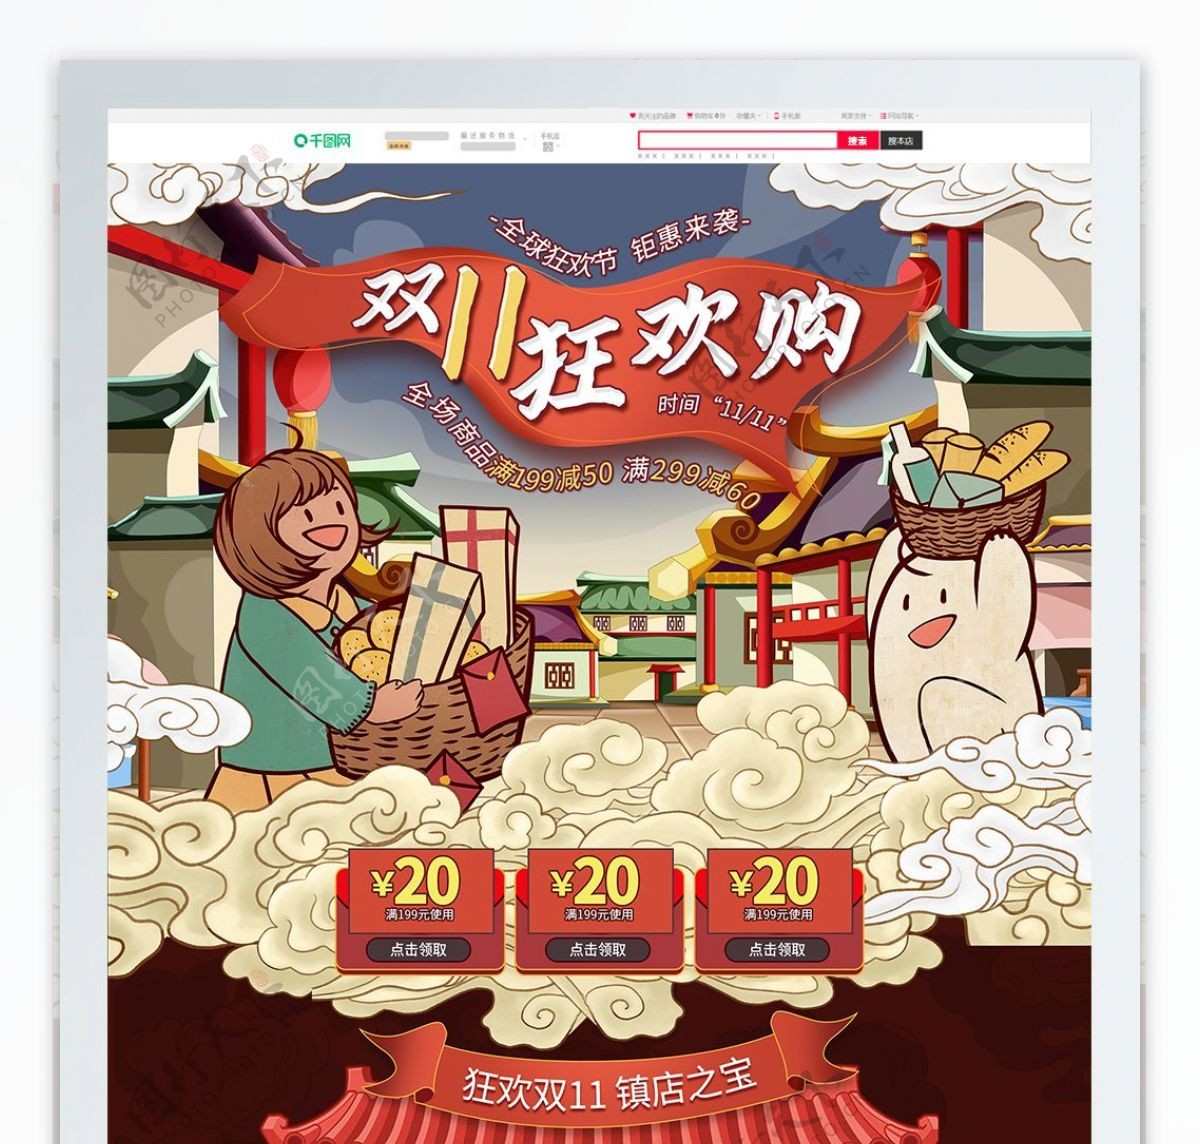 电商淘宝双11狂欢节促销中国风手绘首页